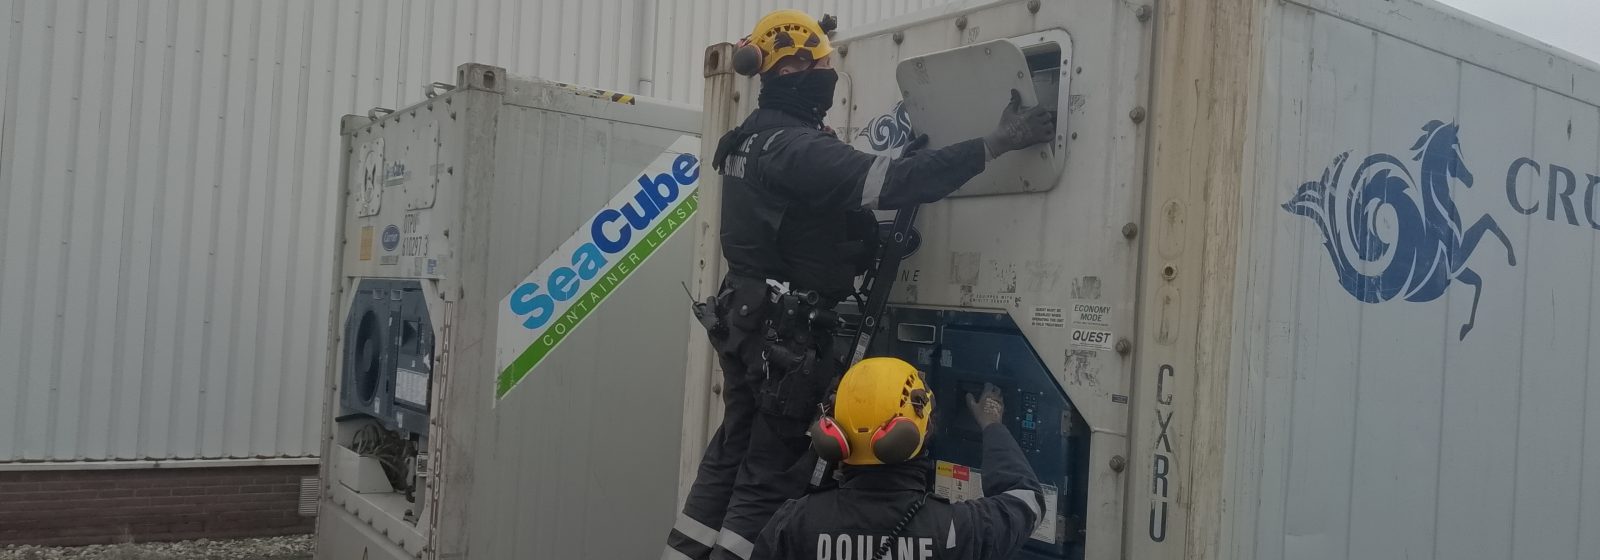 Demontage koelsysteem zeecontainer door douaniers